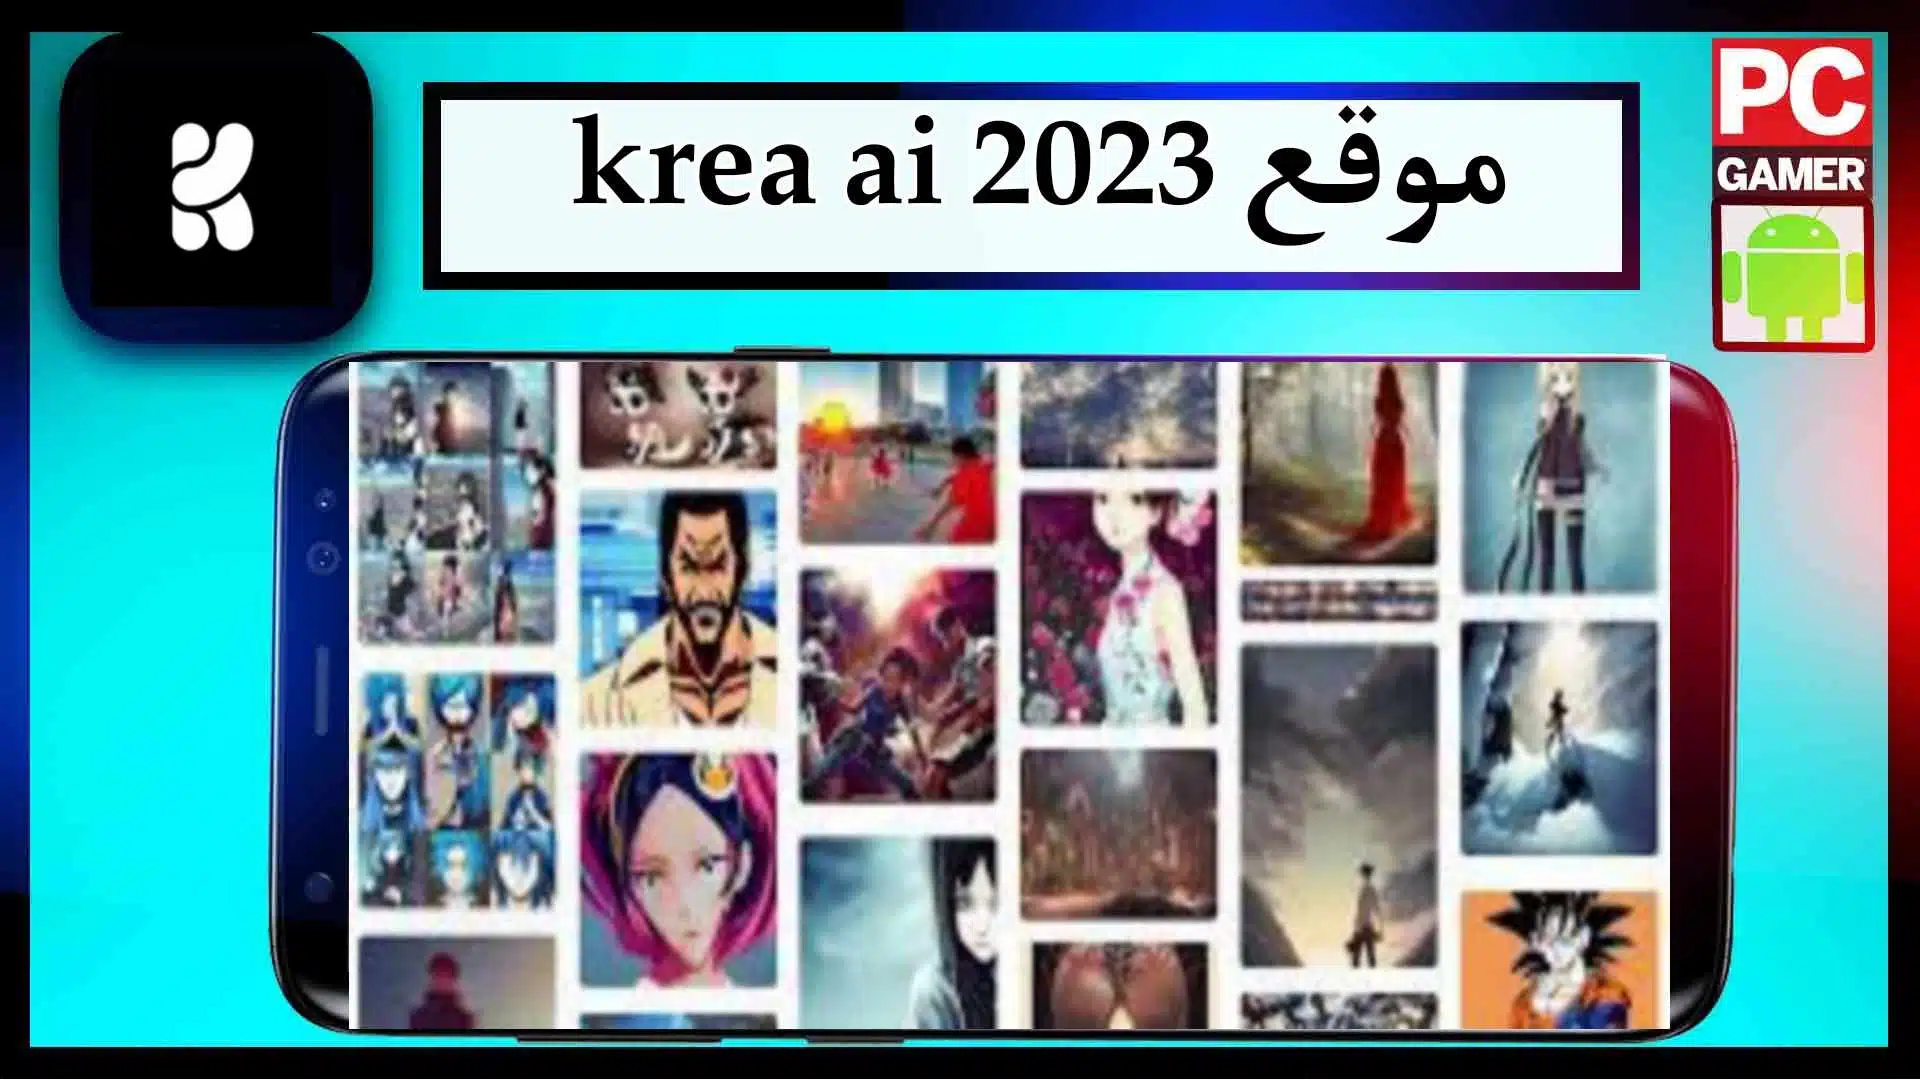 موقع krea ai لانشاء مقاطع الفيديو والصور بالذكاء الاصطناعي 2023 مجانا